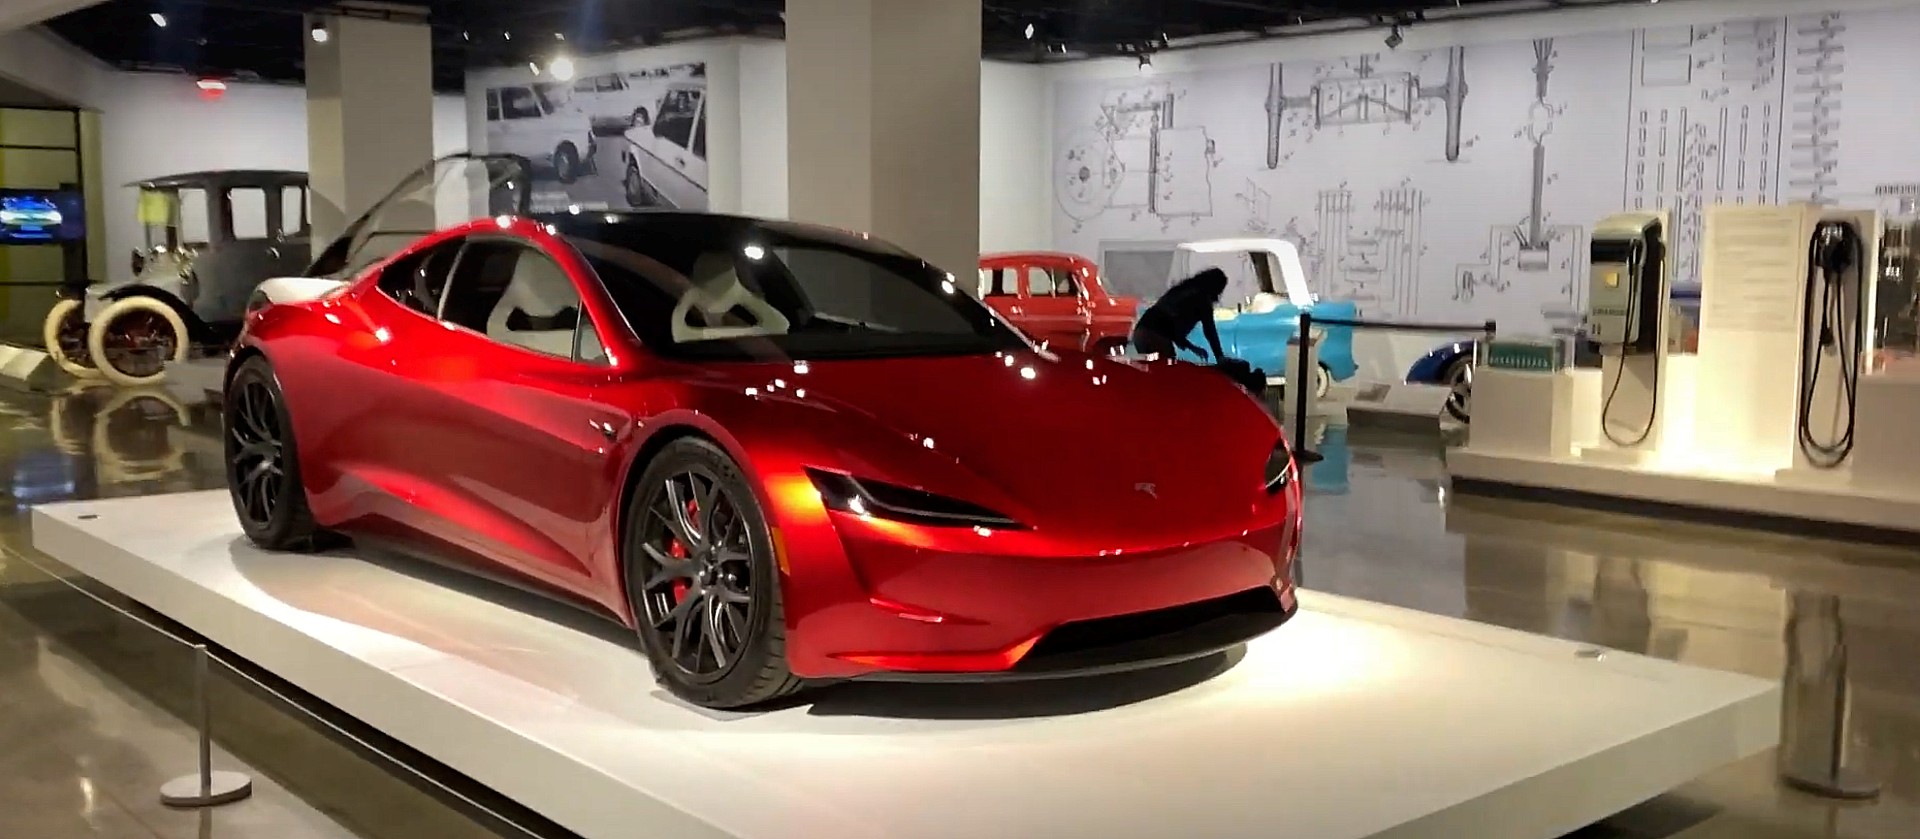 Tesla Roadster, Cybertruck set to return to Petersen Auto Museum in new company exhibit Auto Recent